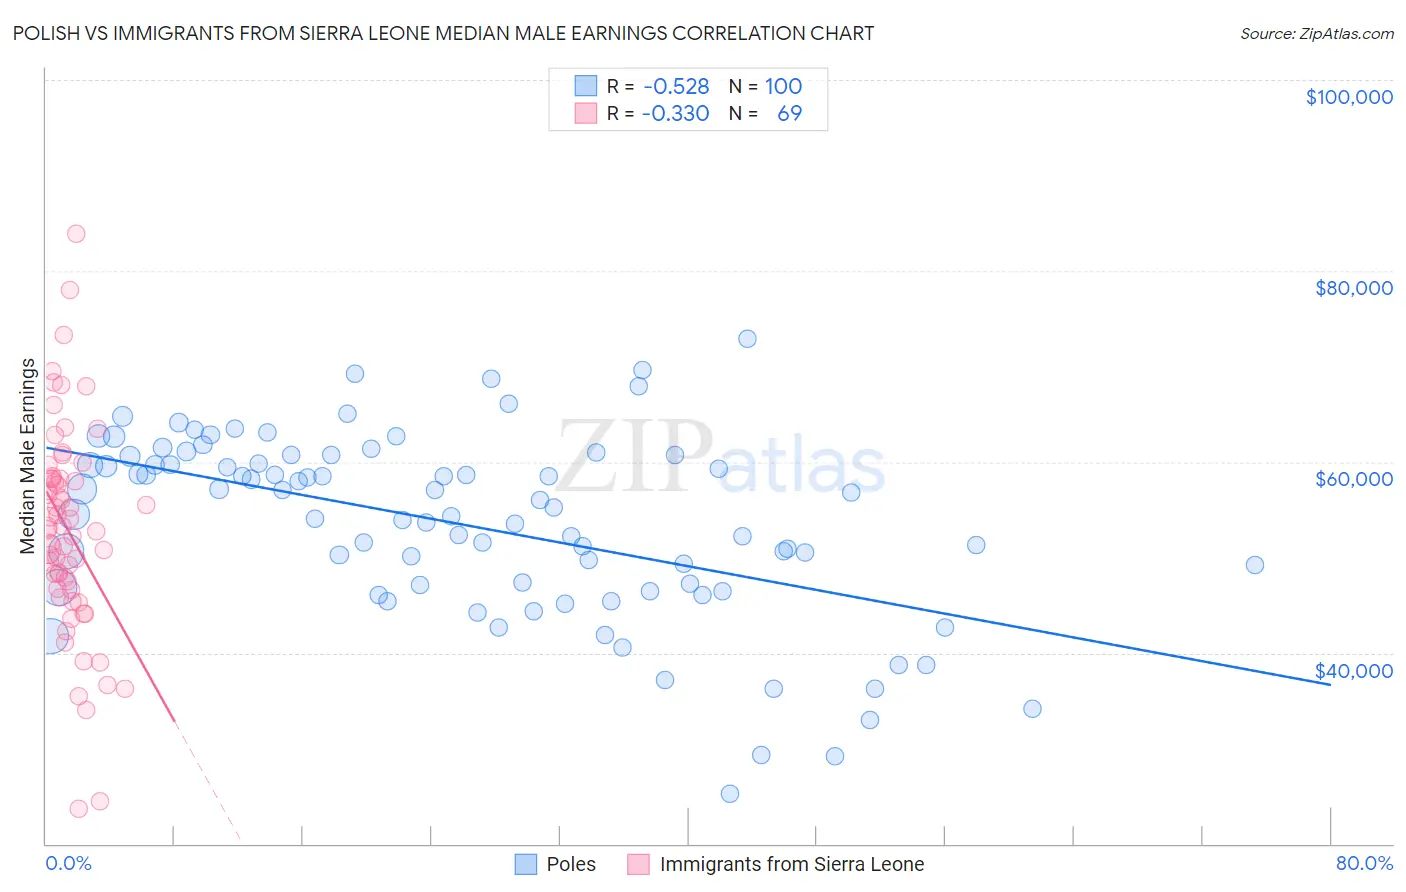 Polish vs Immigrants from Sierra Leone Median Male Earnings